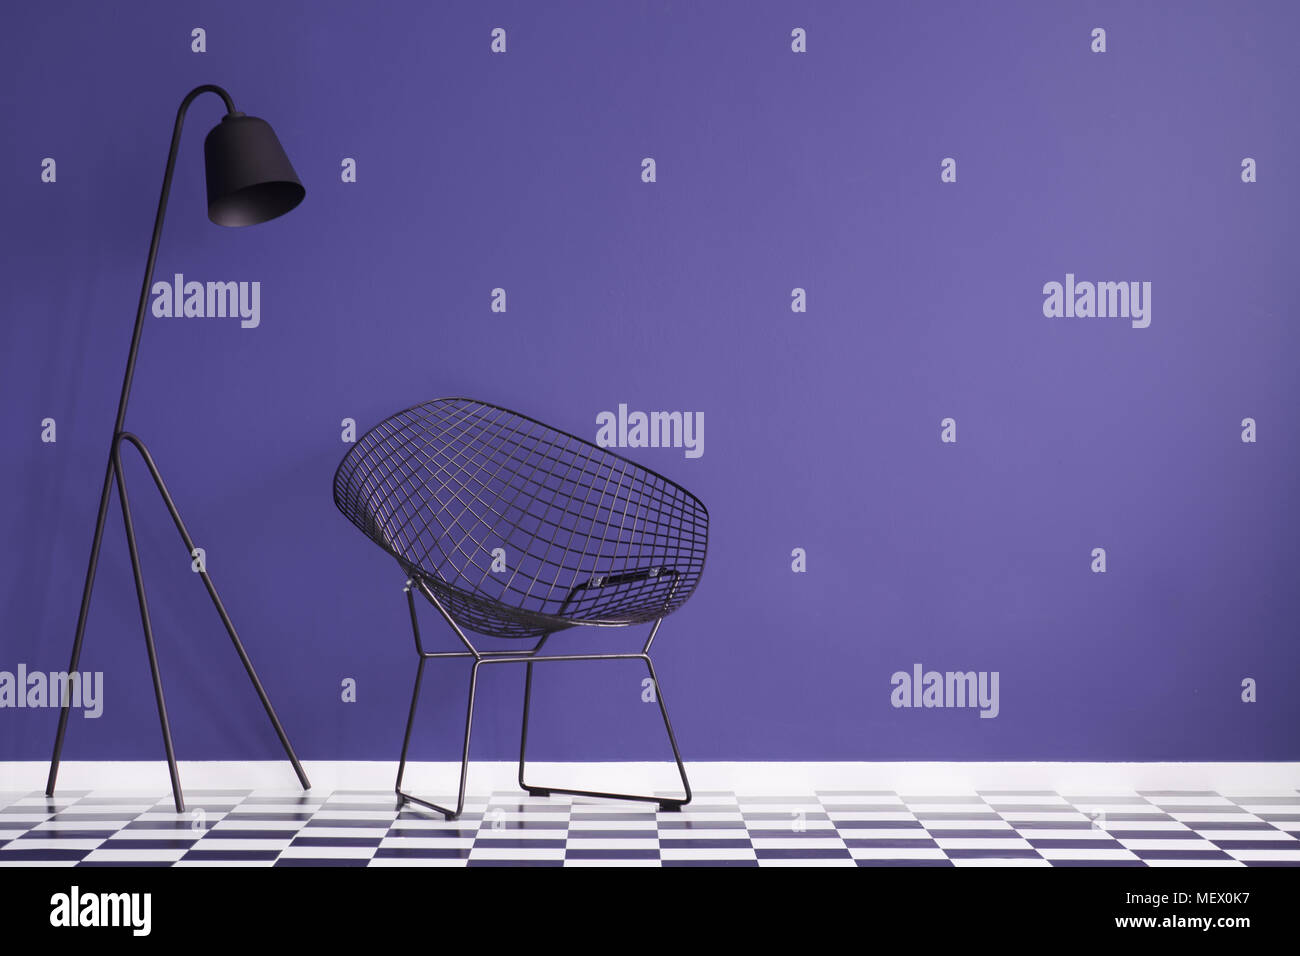 Lampe noire à côté d'un fauteuil sur le sol en damier à l'intérieur violet with copy space Banque D'Images